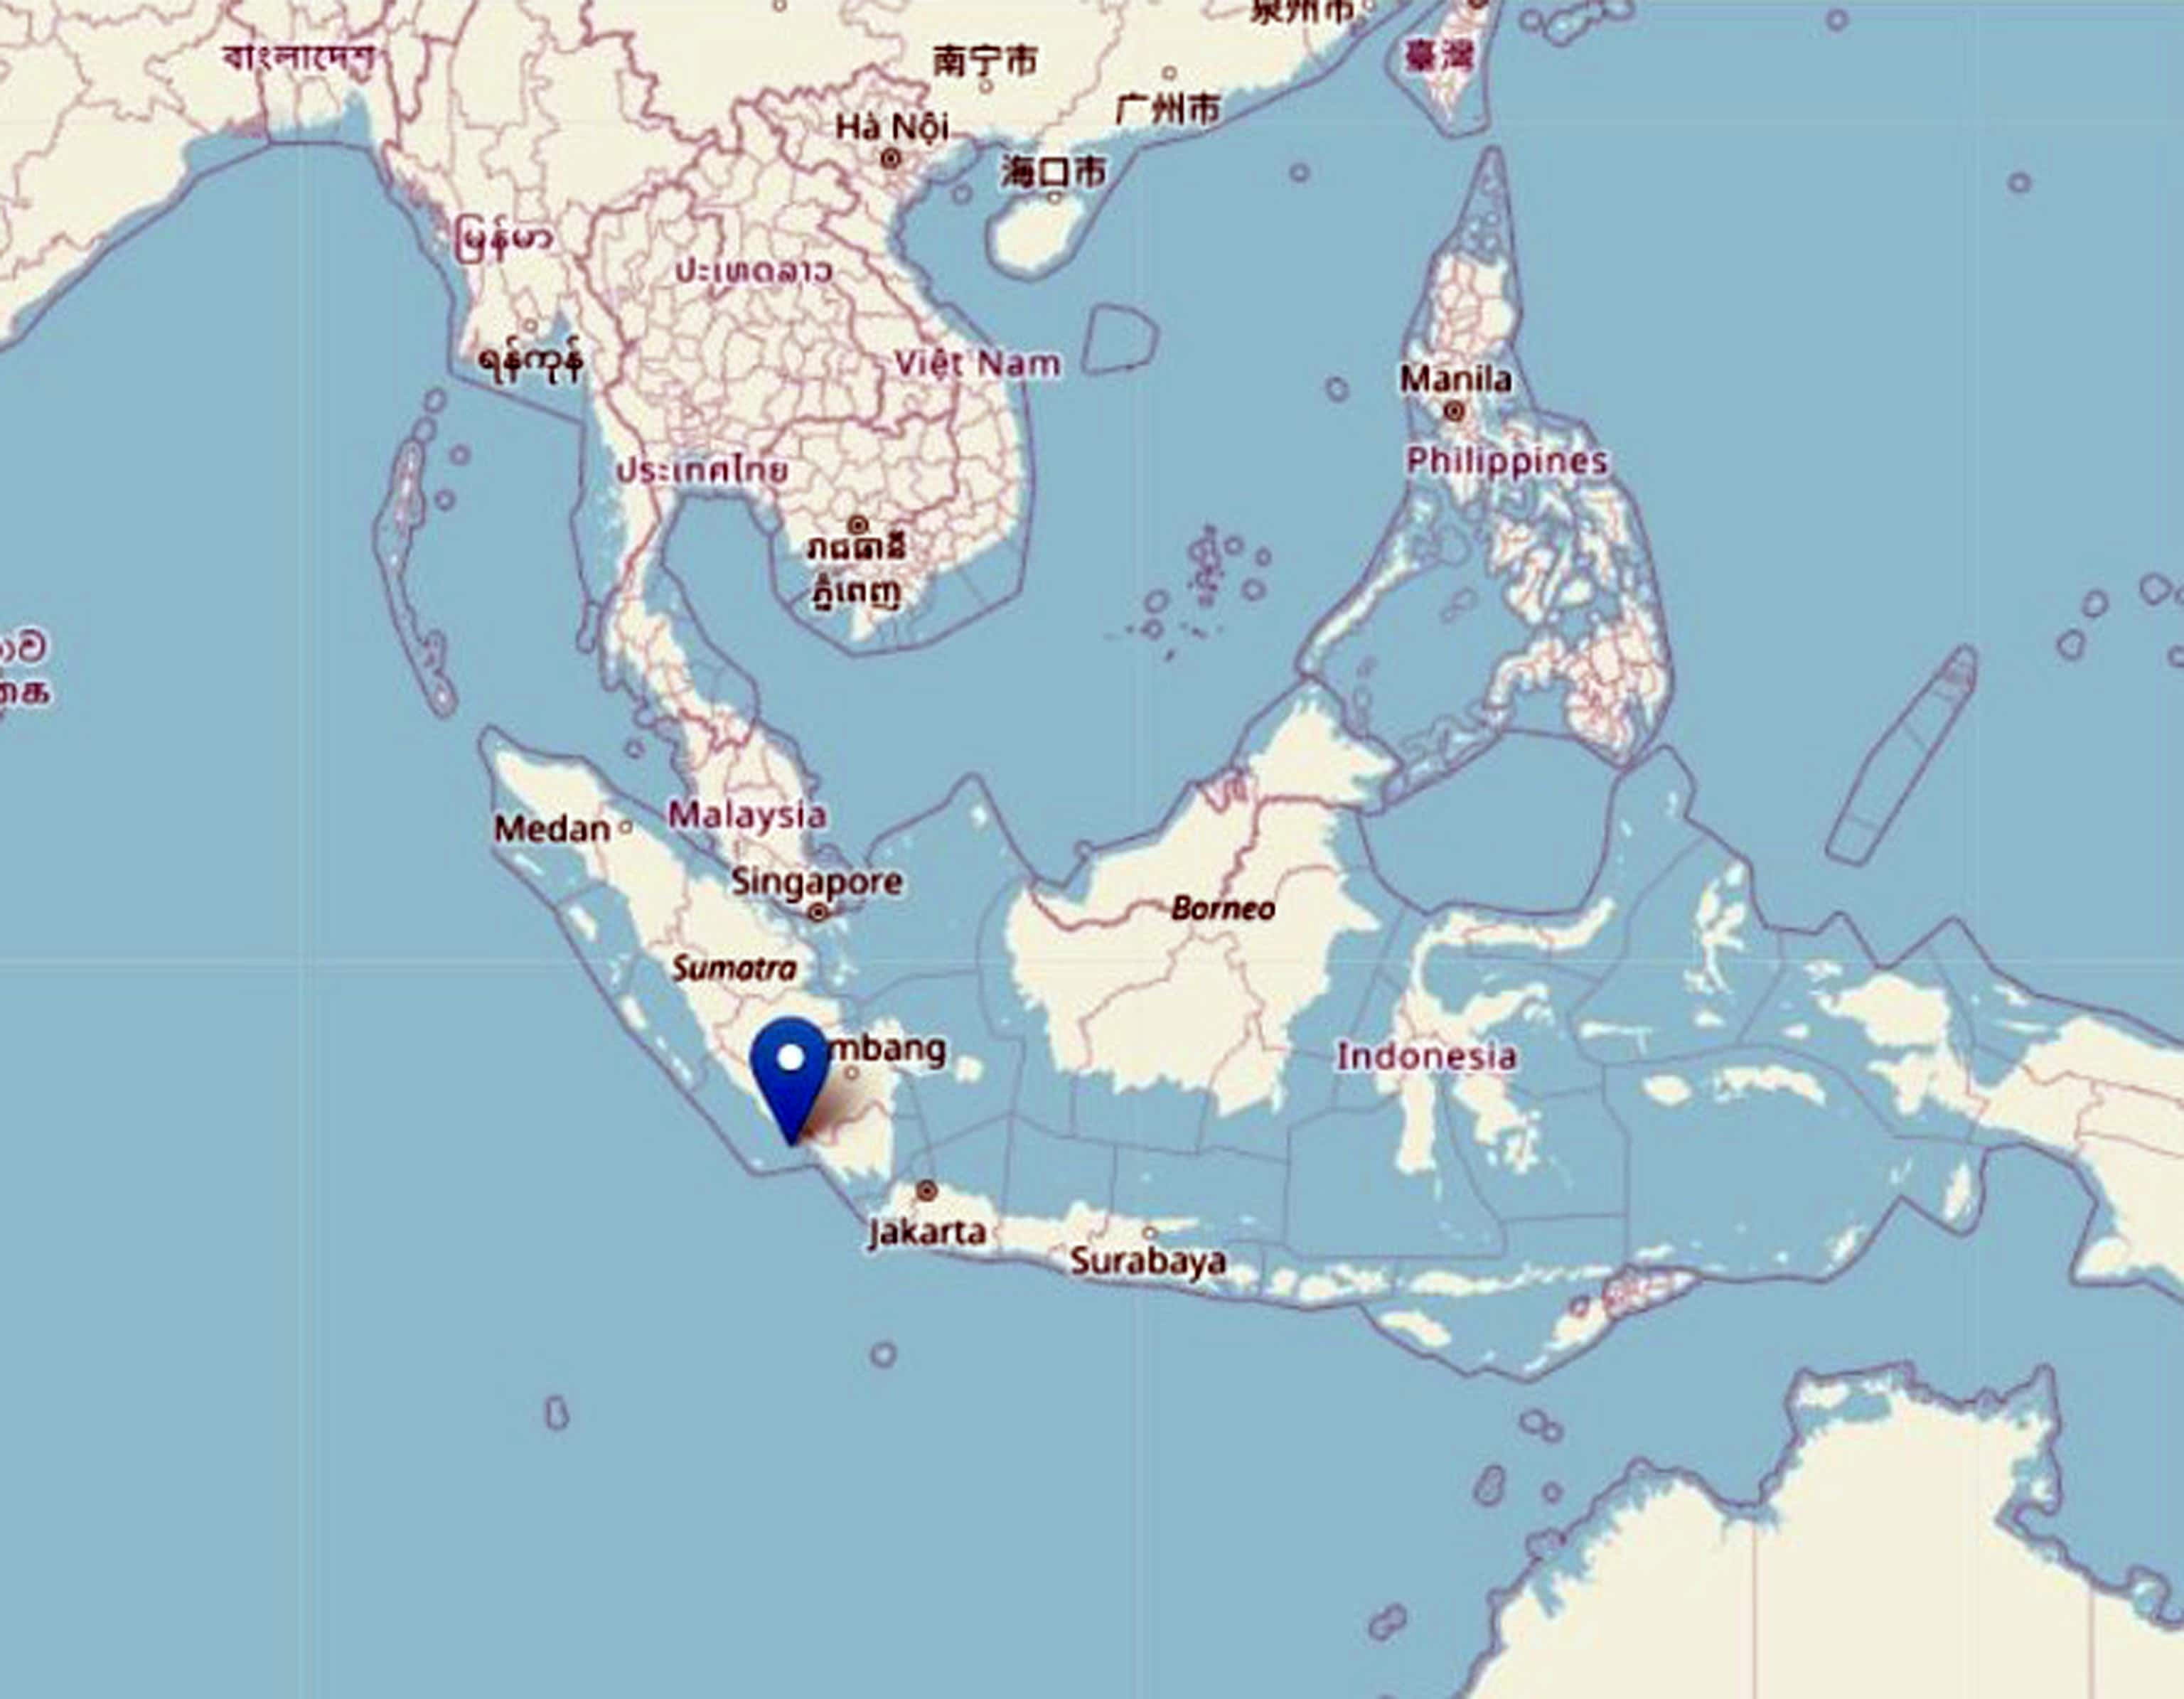 Un terremoto di magnitudo 6.0 ha colpito la parte meridionale di Sumatra, in Indonesia, 23 agosto 2022.
ANSA/INGV
+++ ATTENZIONE LA FOTO NON PUO' ESSERE PUBBLICATA O RIPRODOTTA SENZA L'AUTORIZZAZIONE DELLA FONTE DI ORIGINE CUI SI RINVIA+++